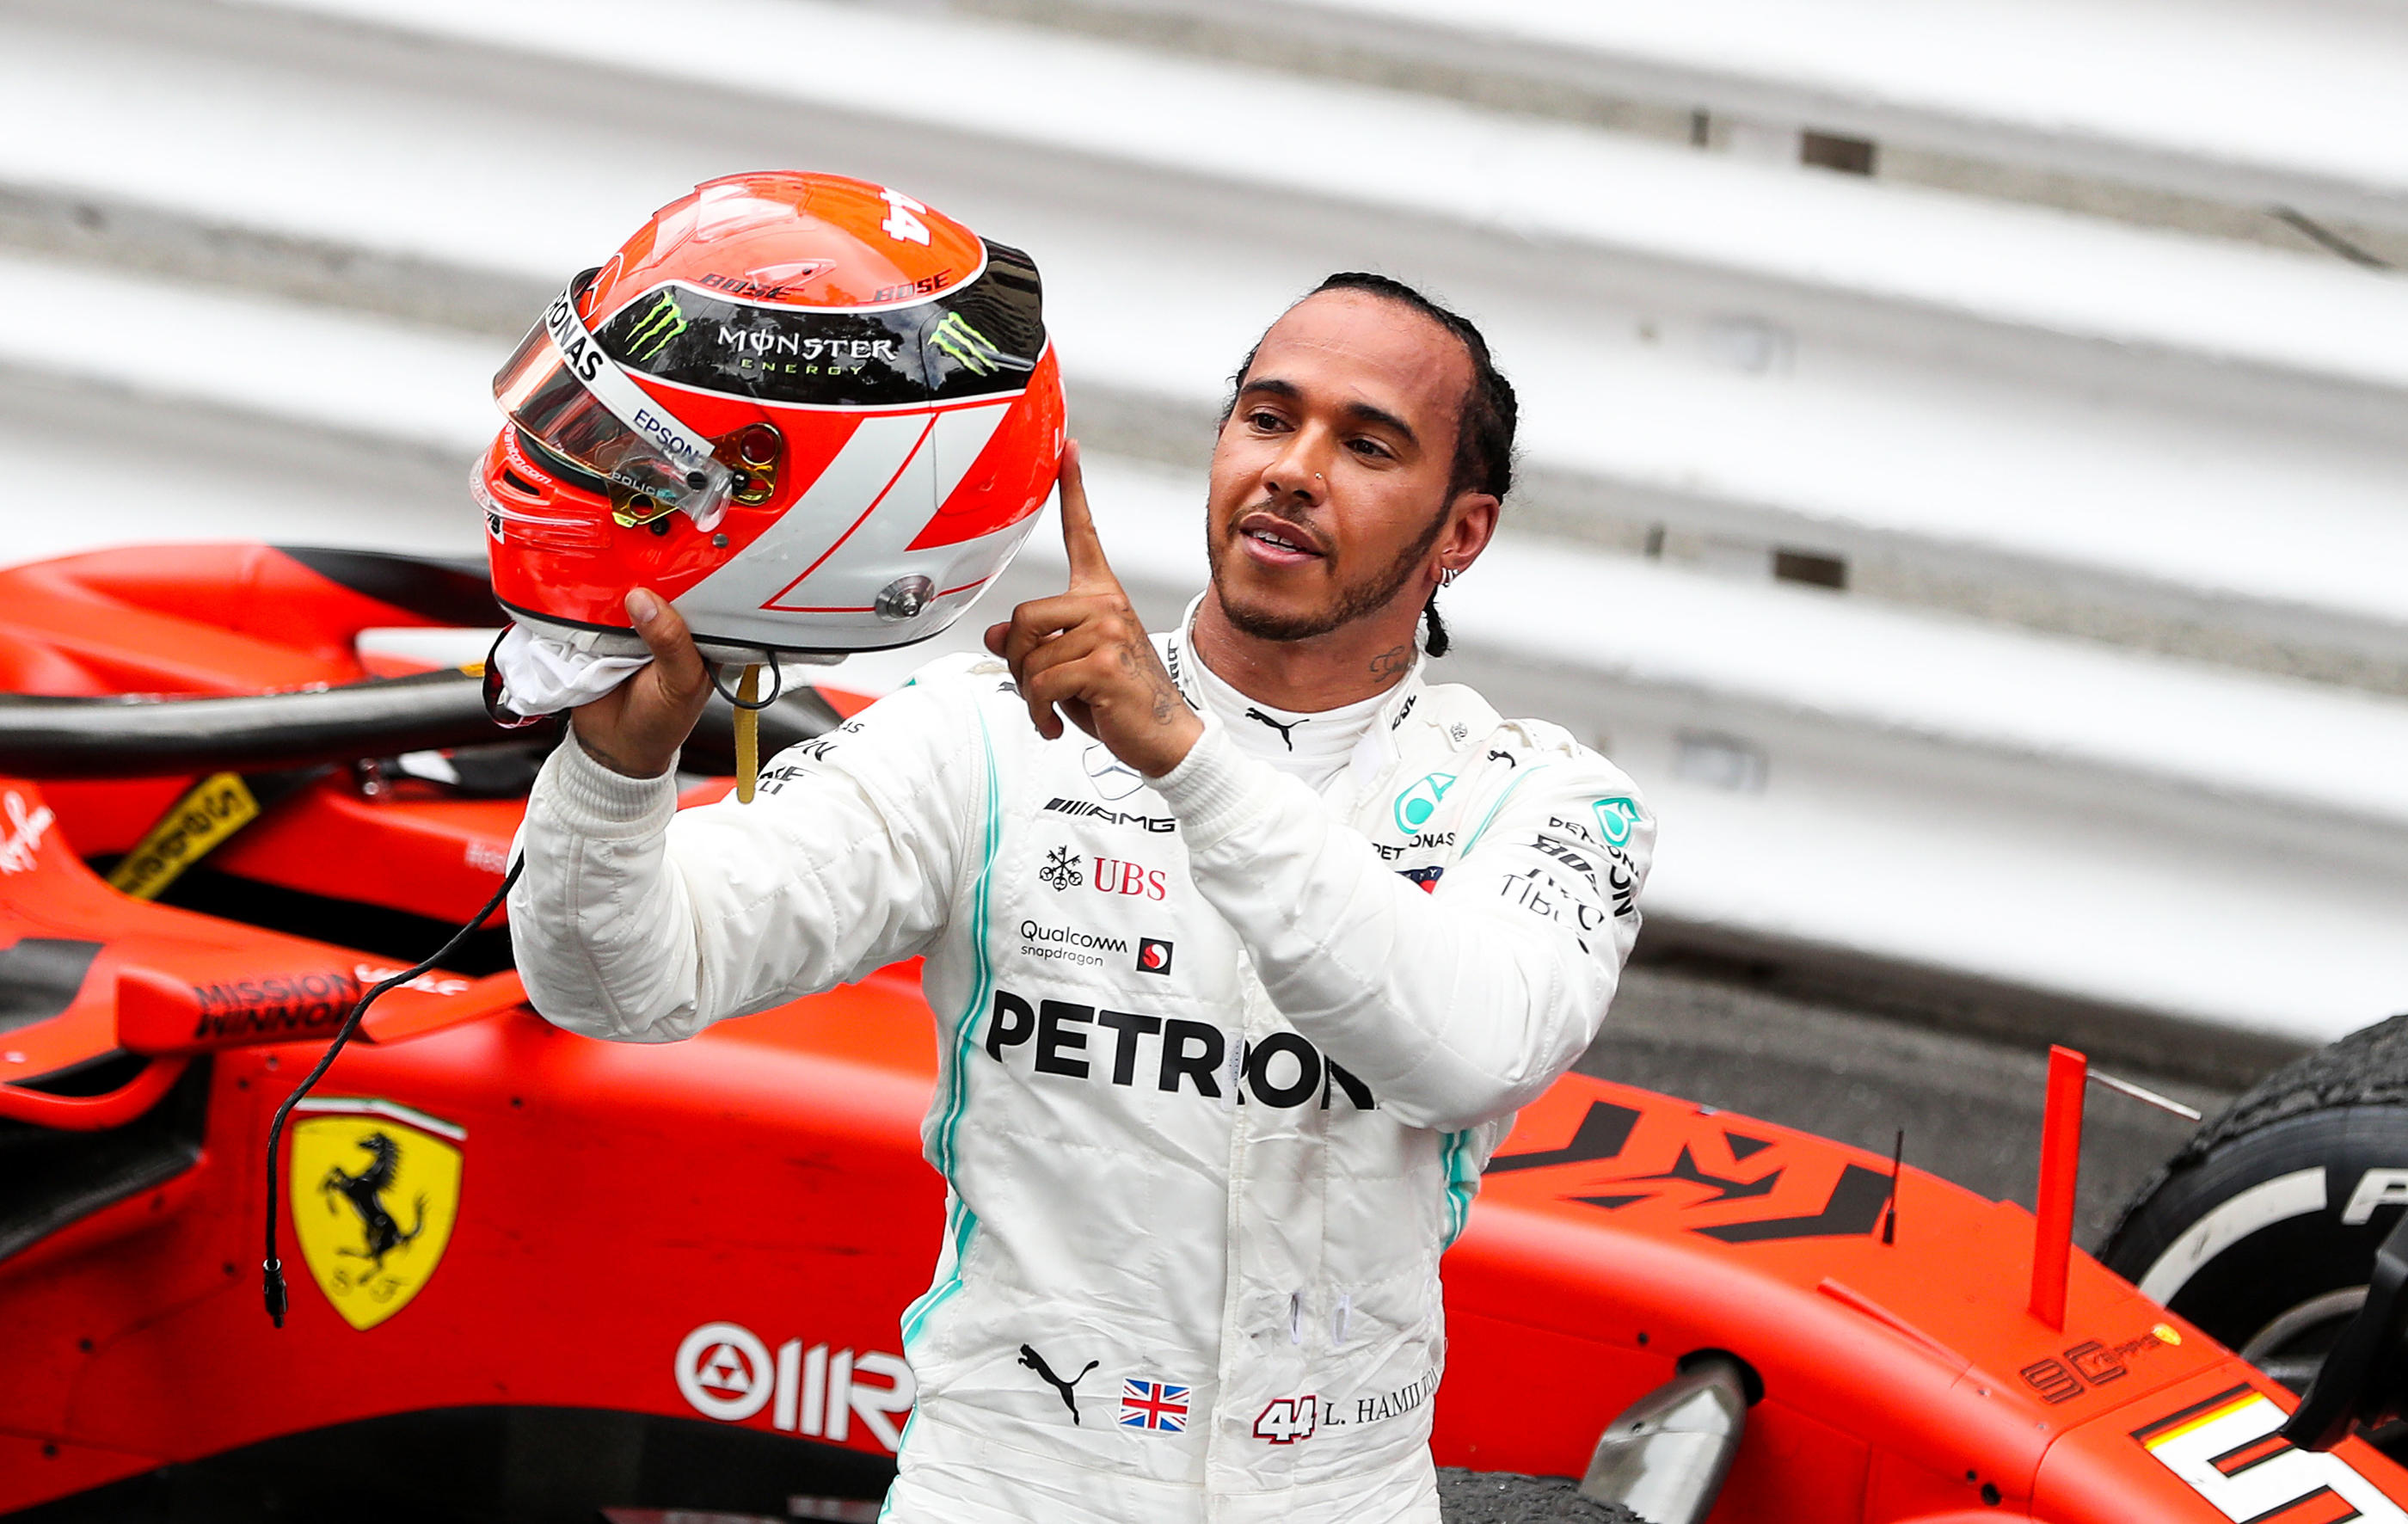 Victorieux du Grand Prix de Monaco en 2019, Lewis Hamilton avait alors dédié à victoire à Nikki Lauda, légende de Ferrari décédé peu avant. Le signe d'une attirance pour la Scuderai jamais démentie. PA Images/Icon Sport